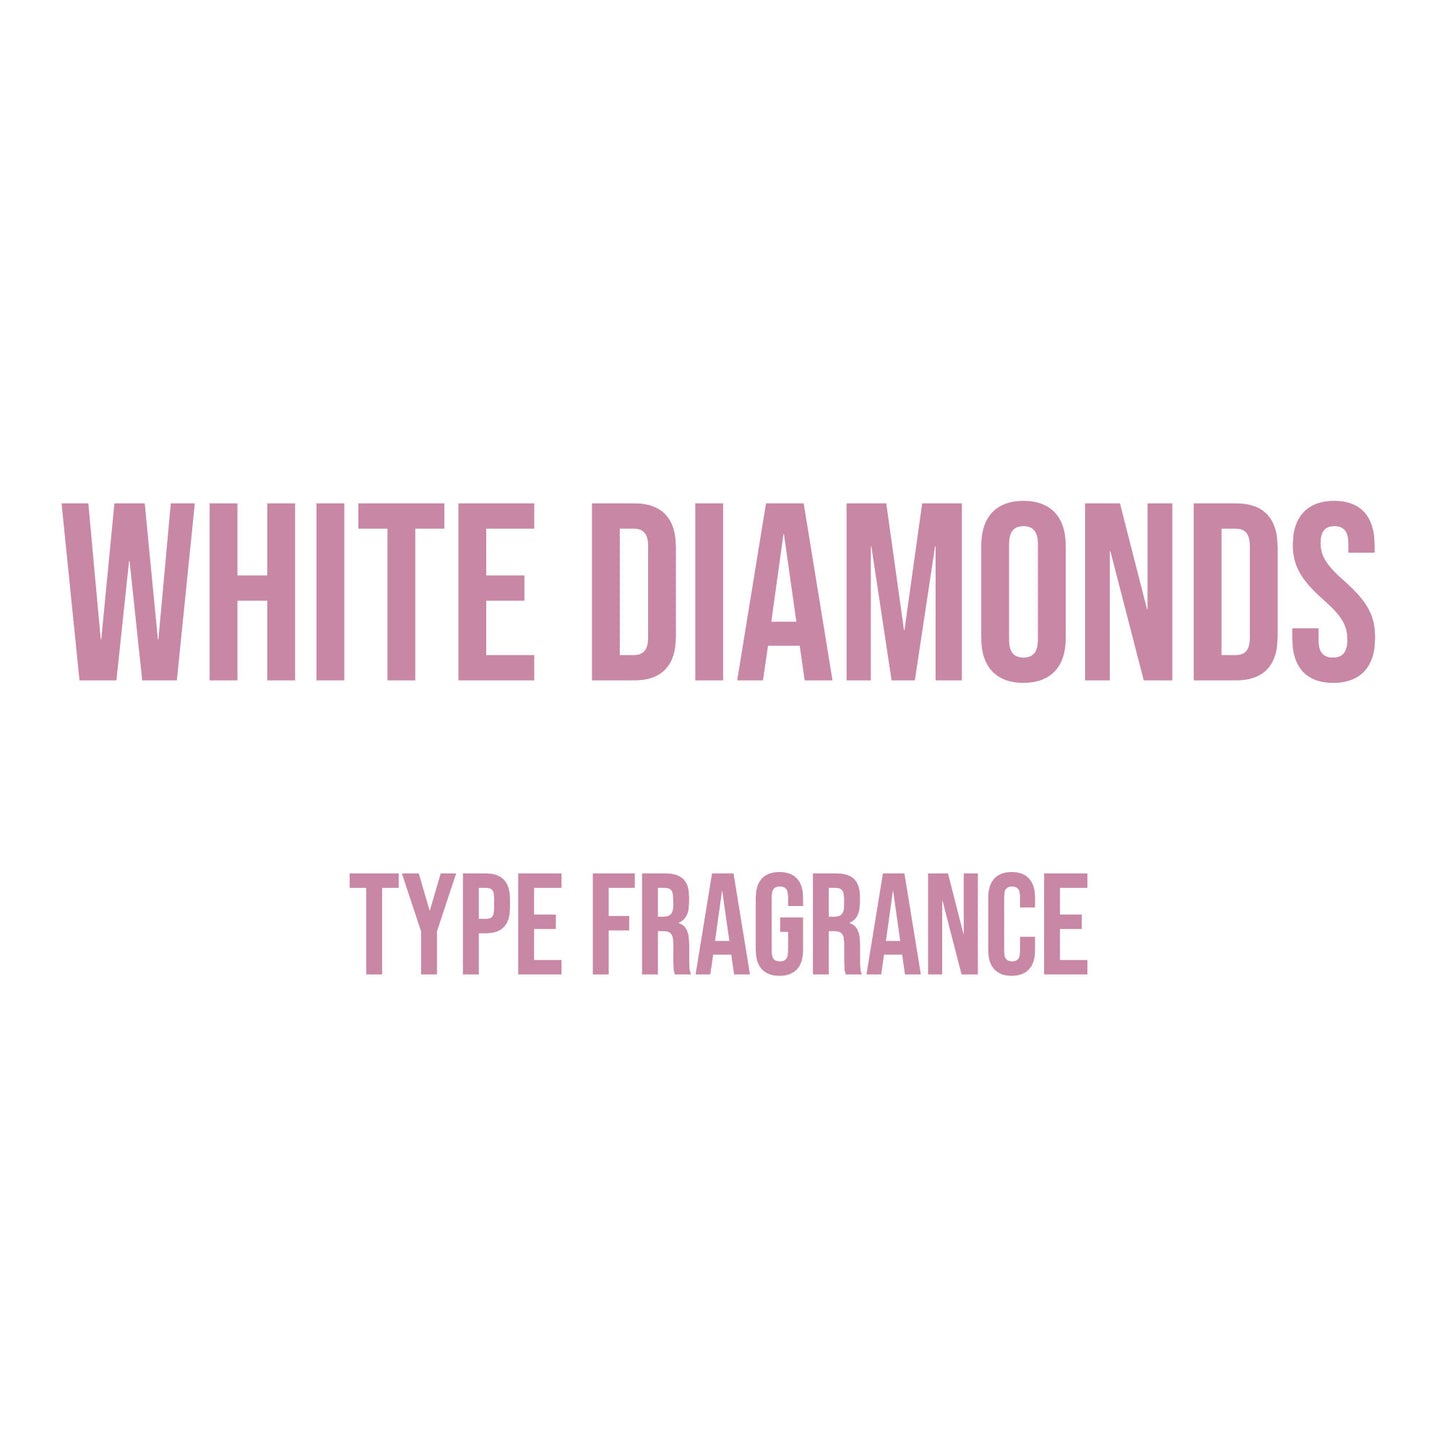 White Diamonds Type Fragrance